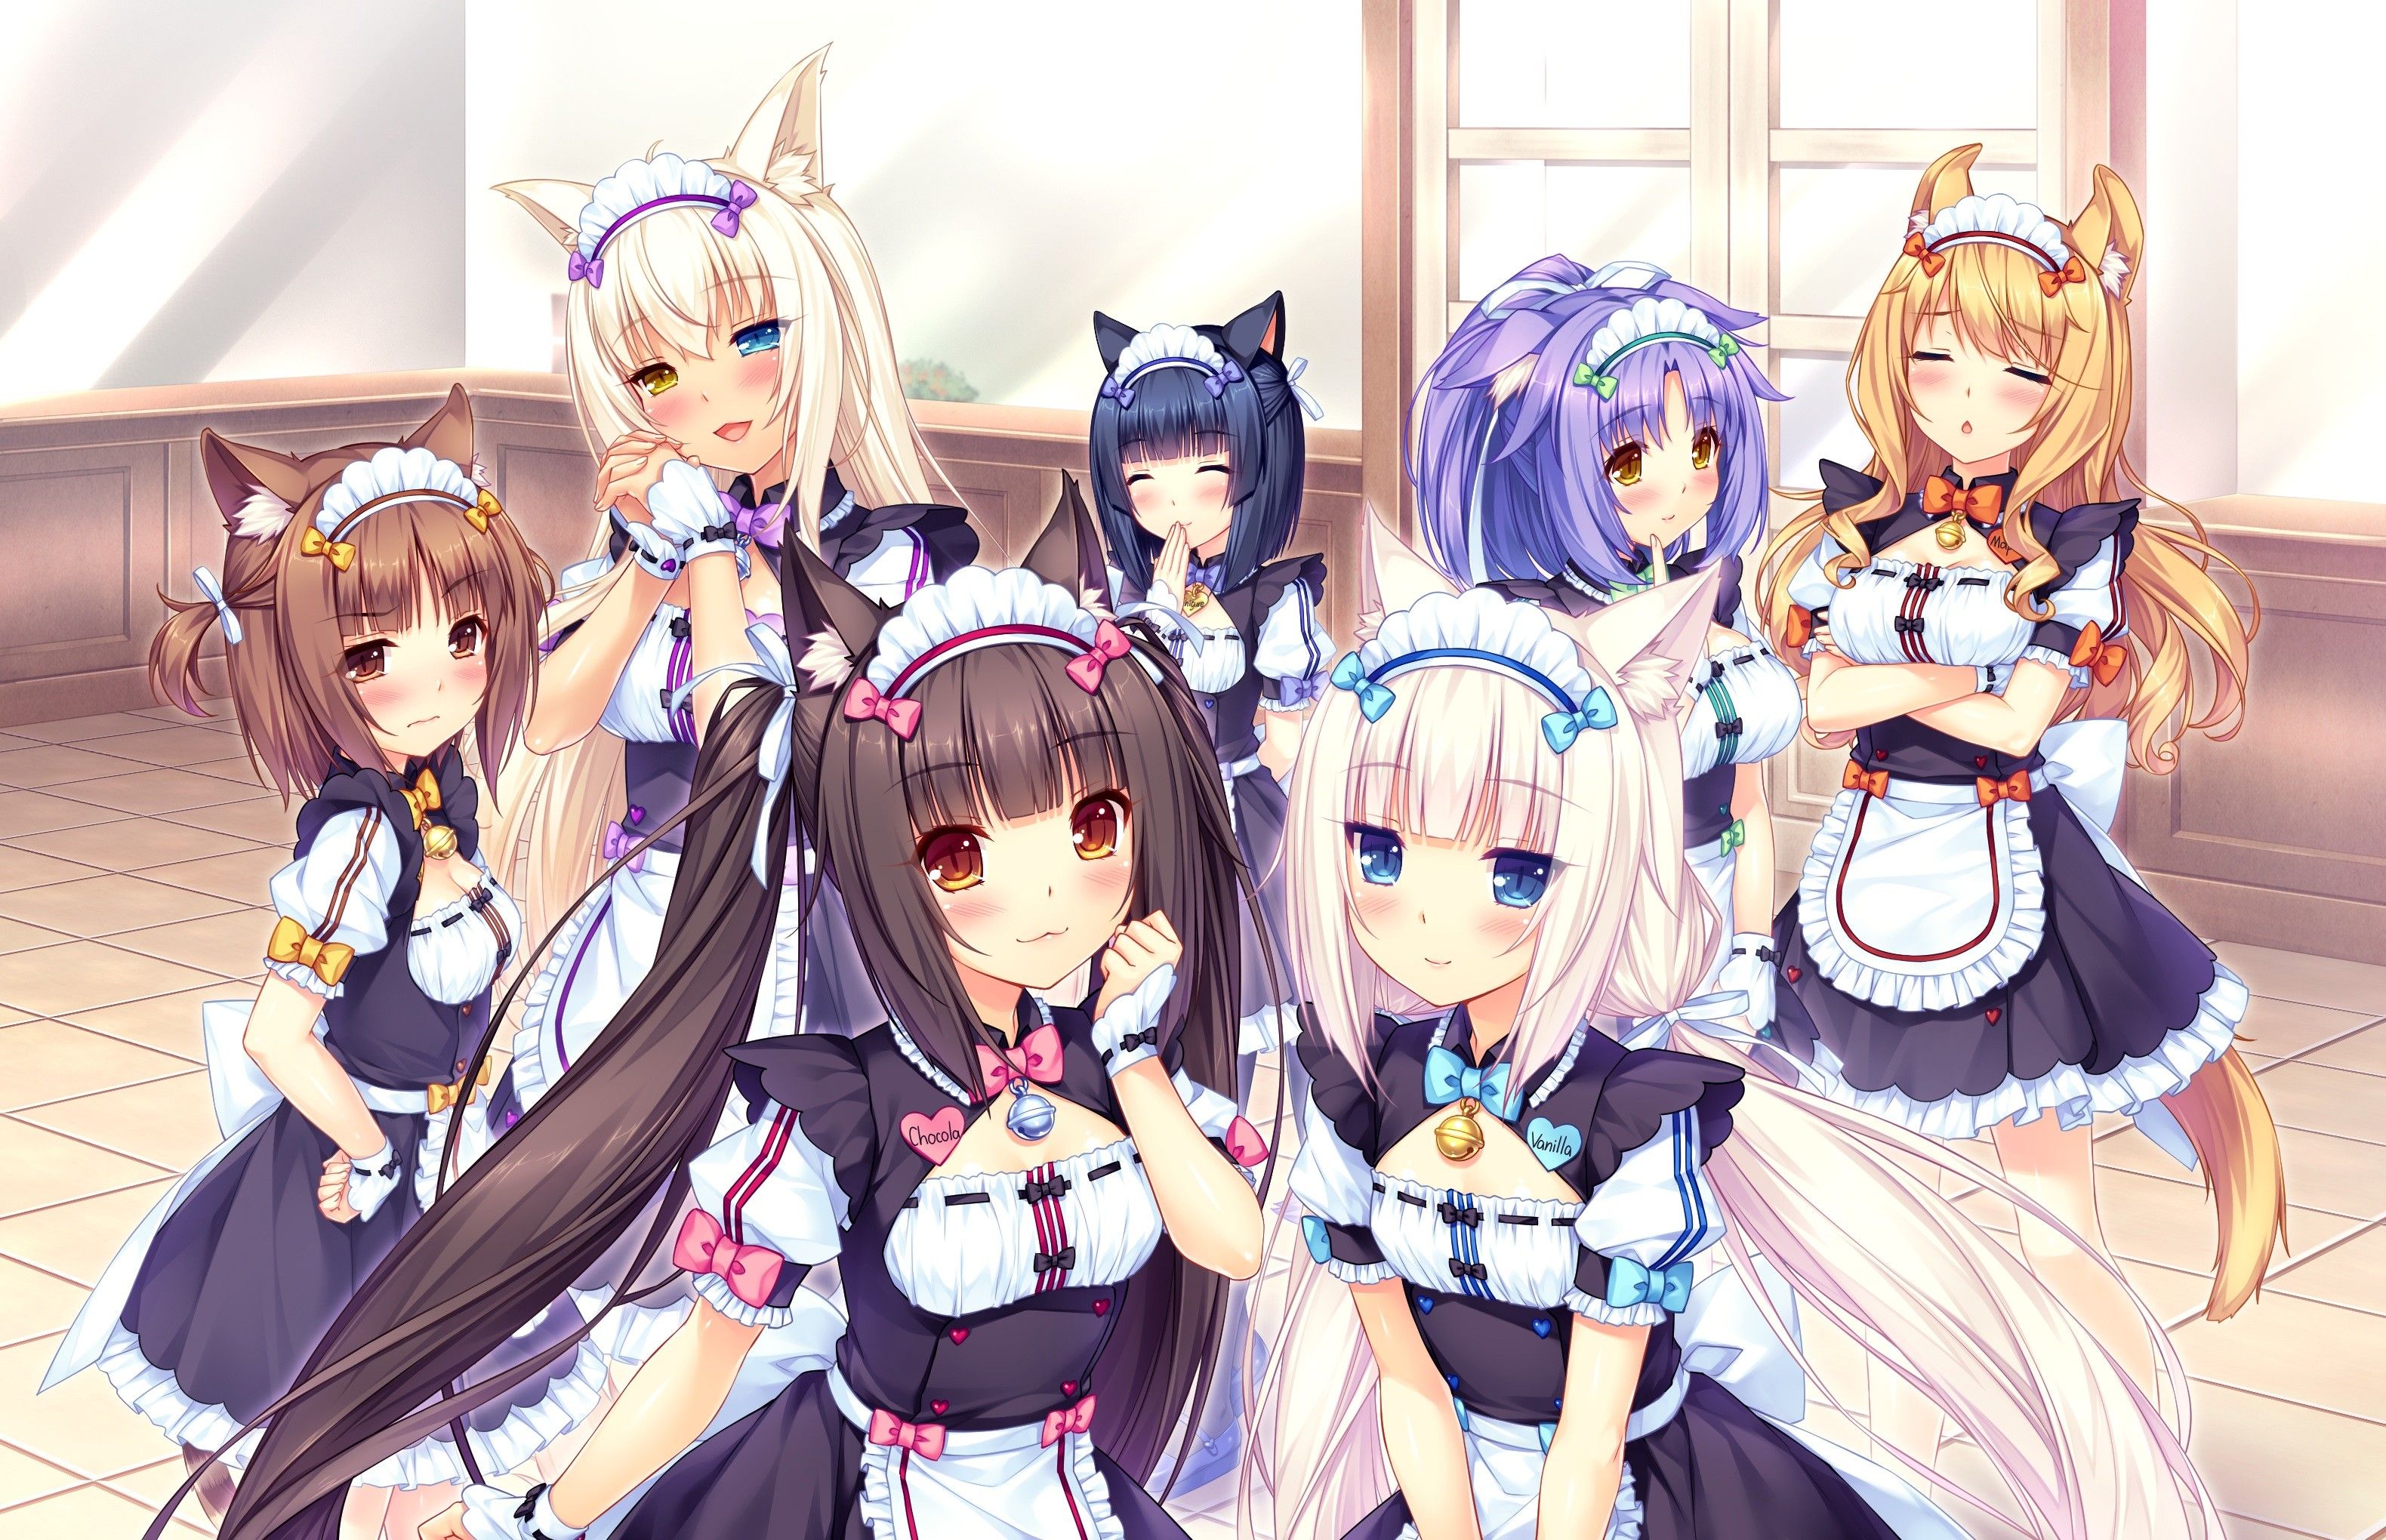 chicas neko | #cat girl, #anime, #anime girls, #Neko Para, #Azuki ...